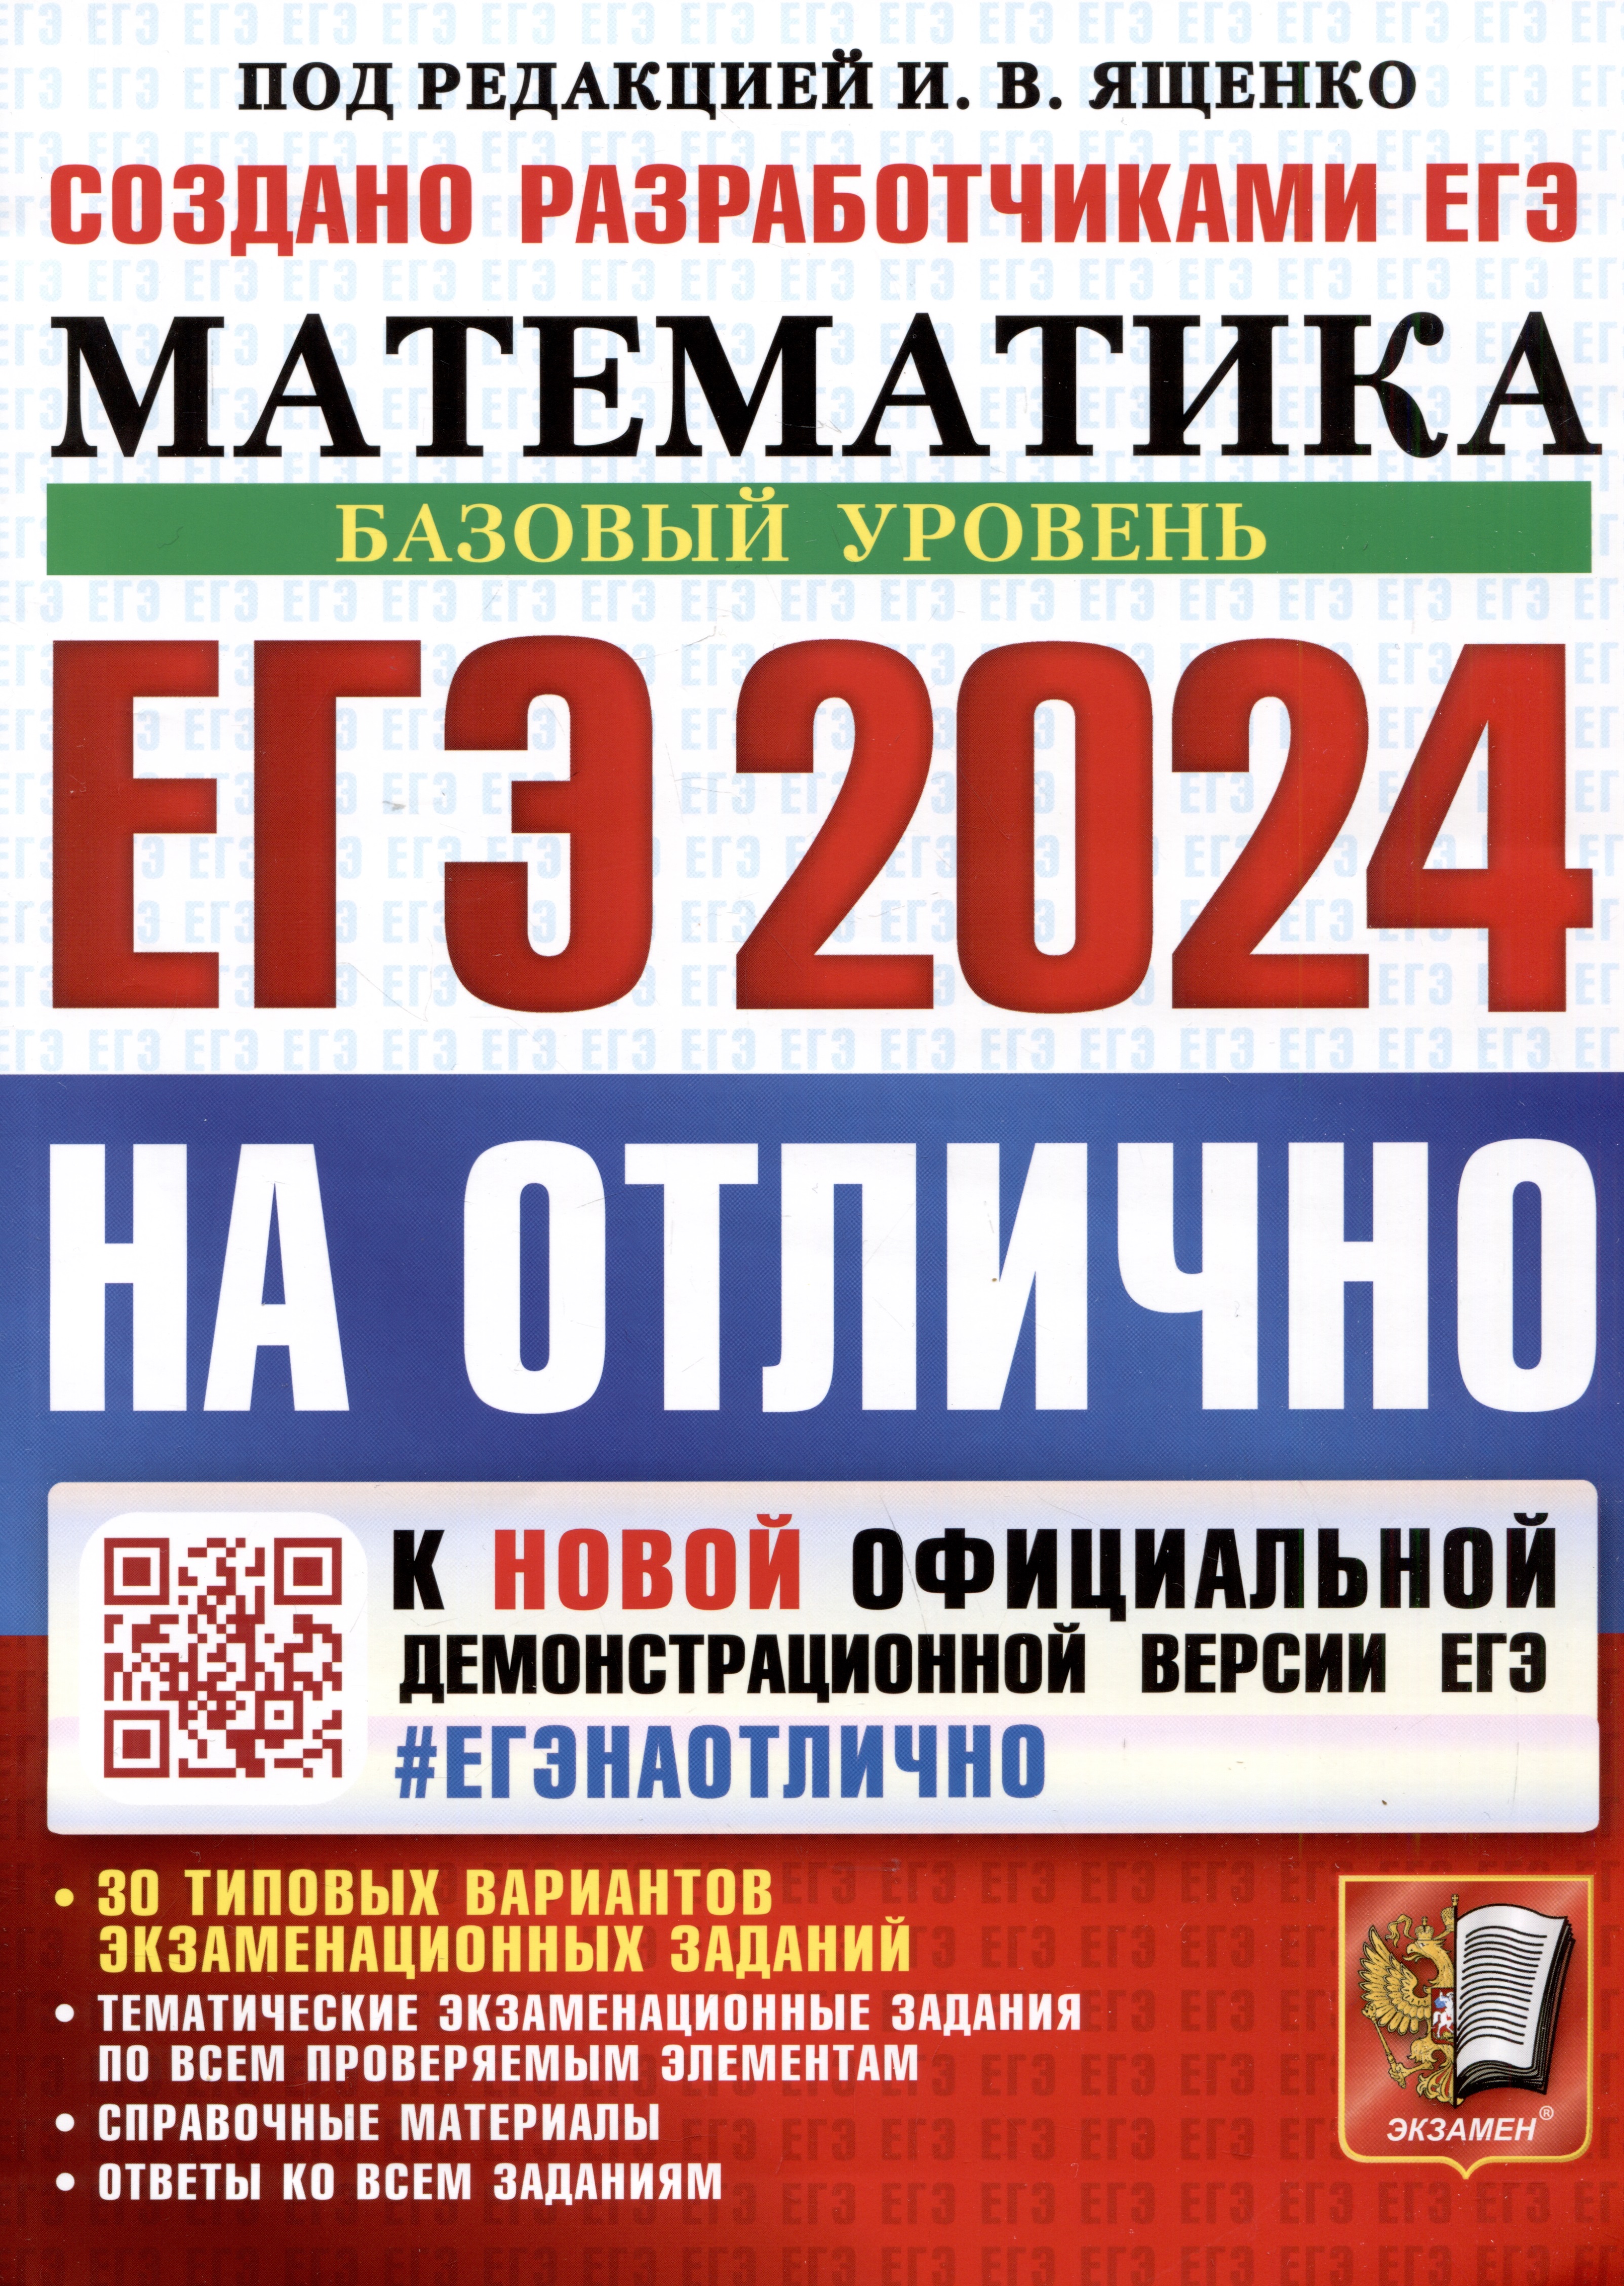 Сборник вариантов егэ ященко 2023